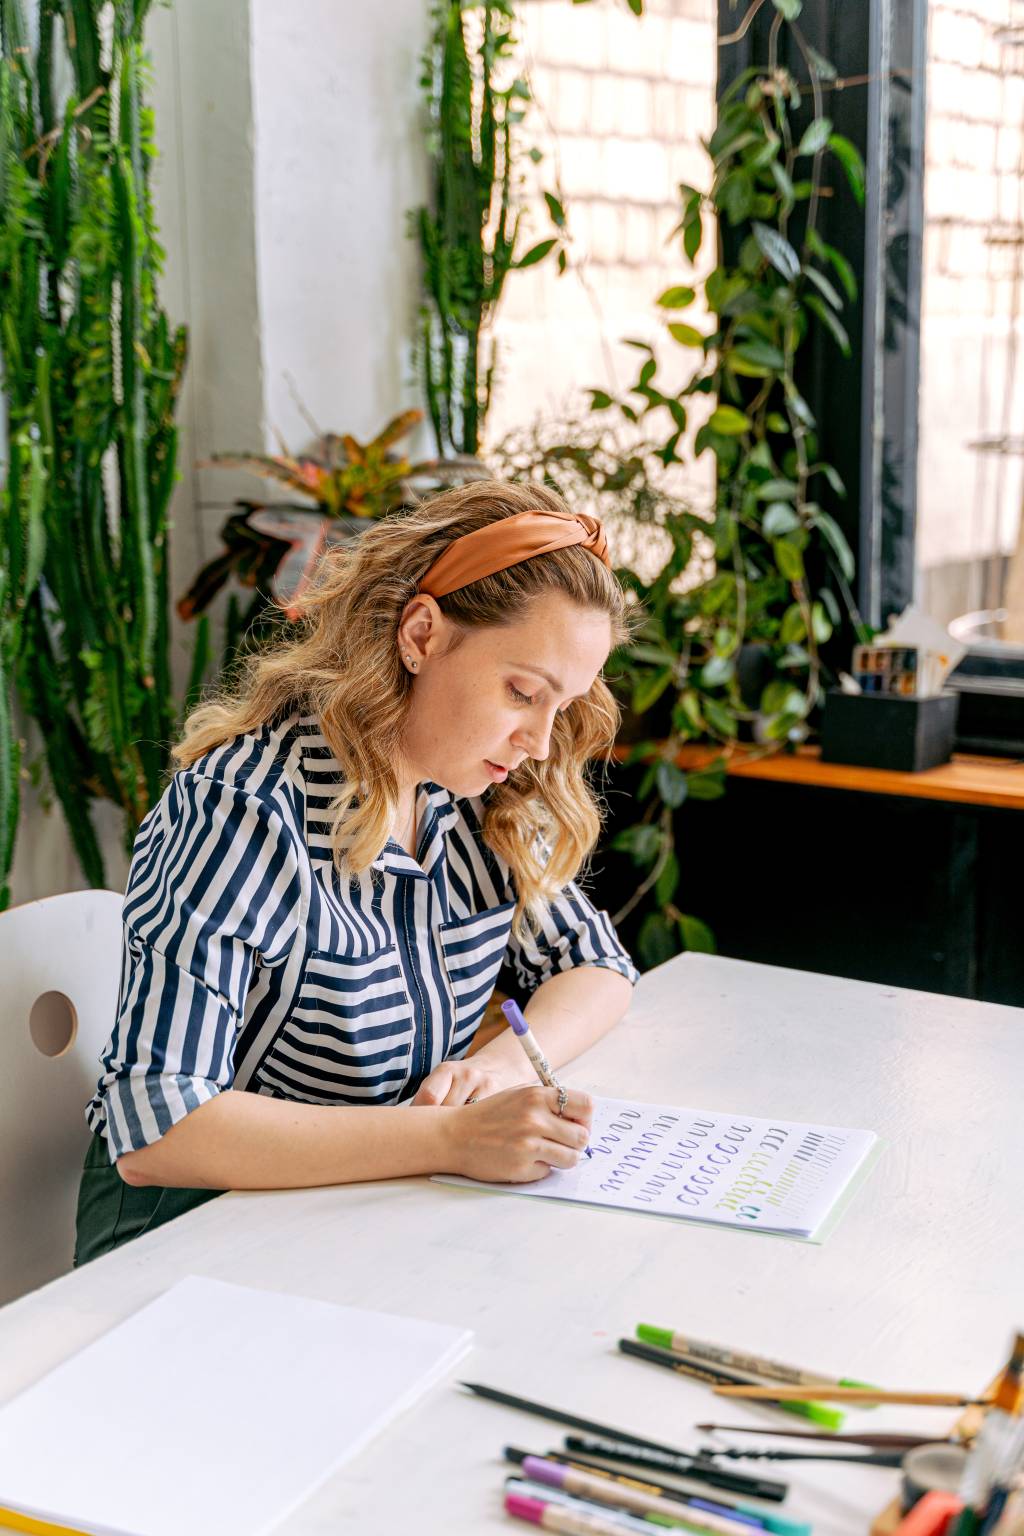 Uma mulher está sentada enquanto olha para um caderno, concentrada, e segura um lápis